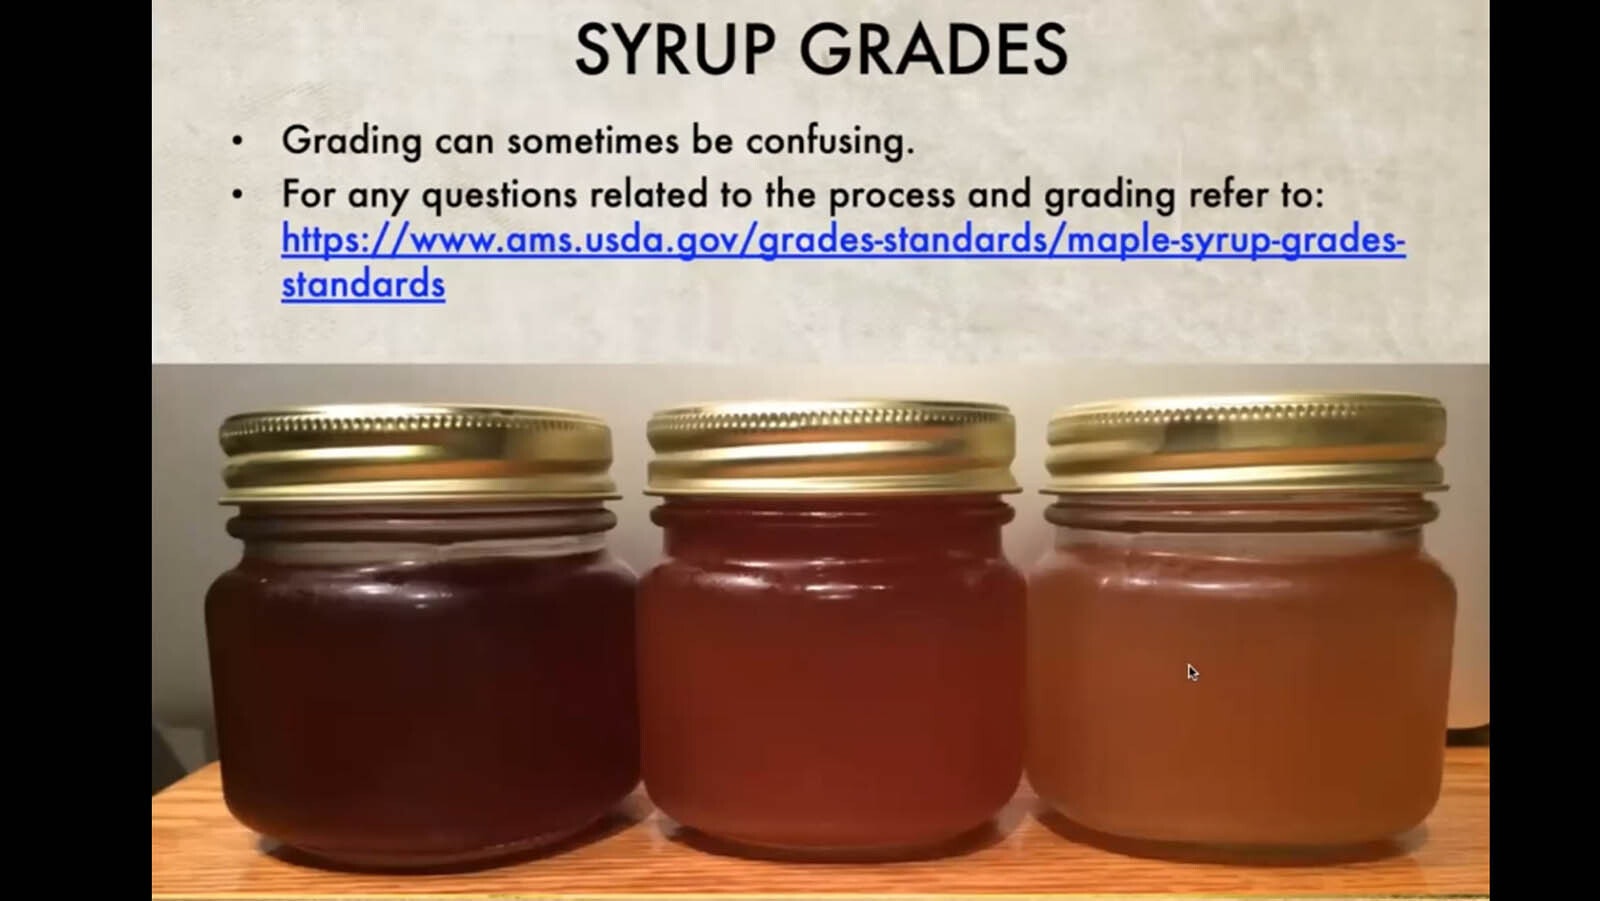 Syrup grades.